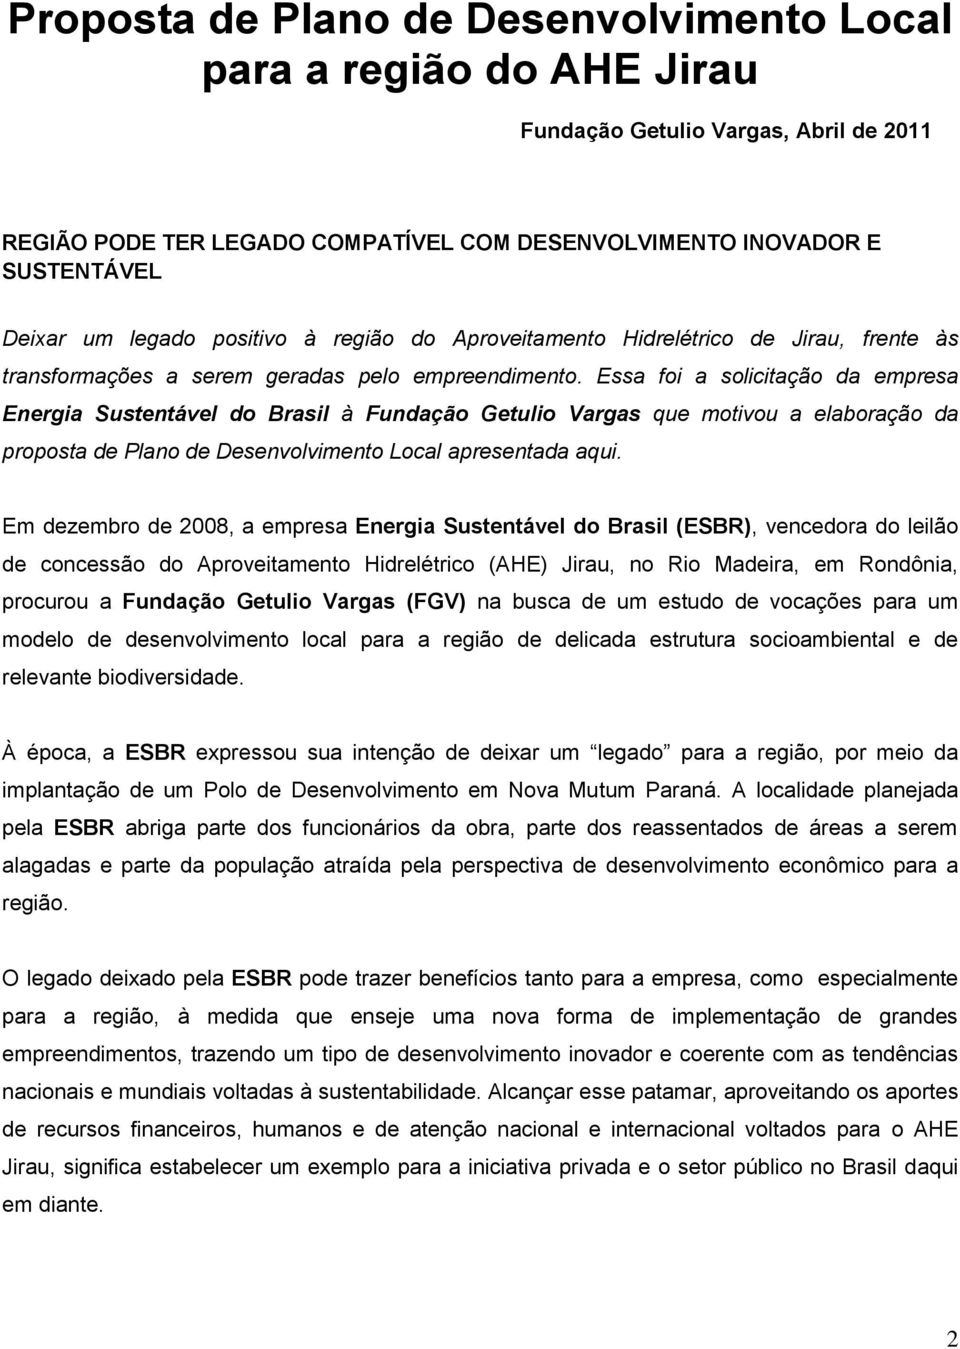 Essa foi a solicitação da empresa Energia Sustentável do Brasil à Fundação Getulio Vargas que motivou a elaboração da proposta de Plano de Desenvolvimento Local apresentada aqui.